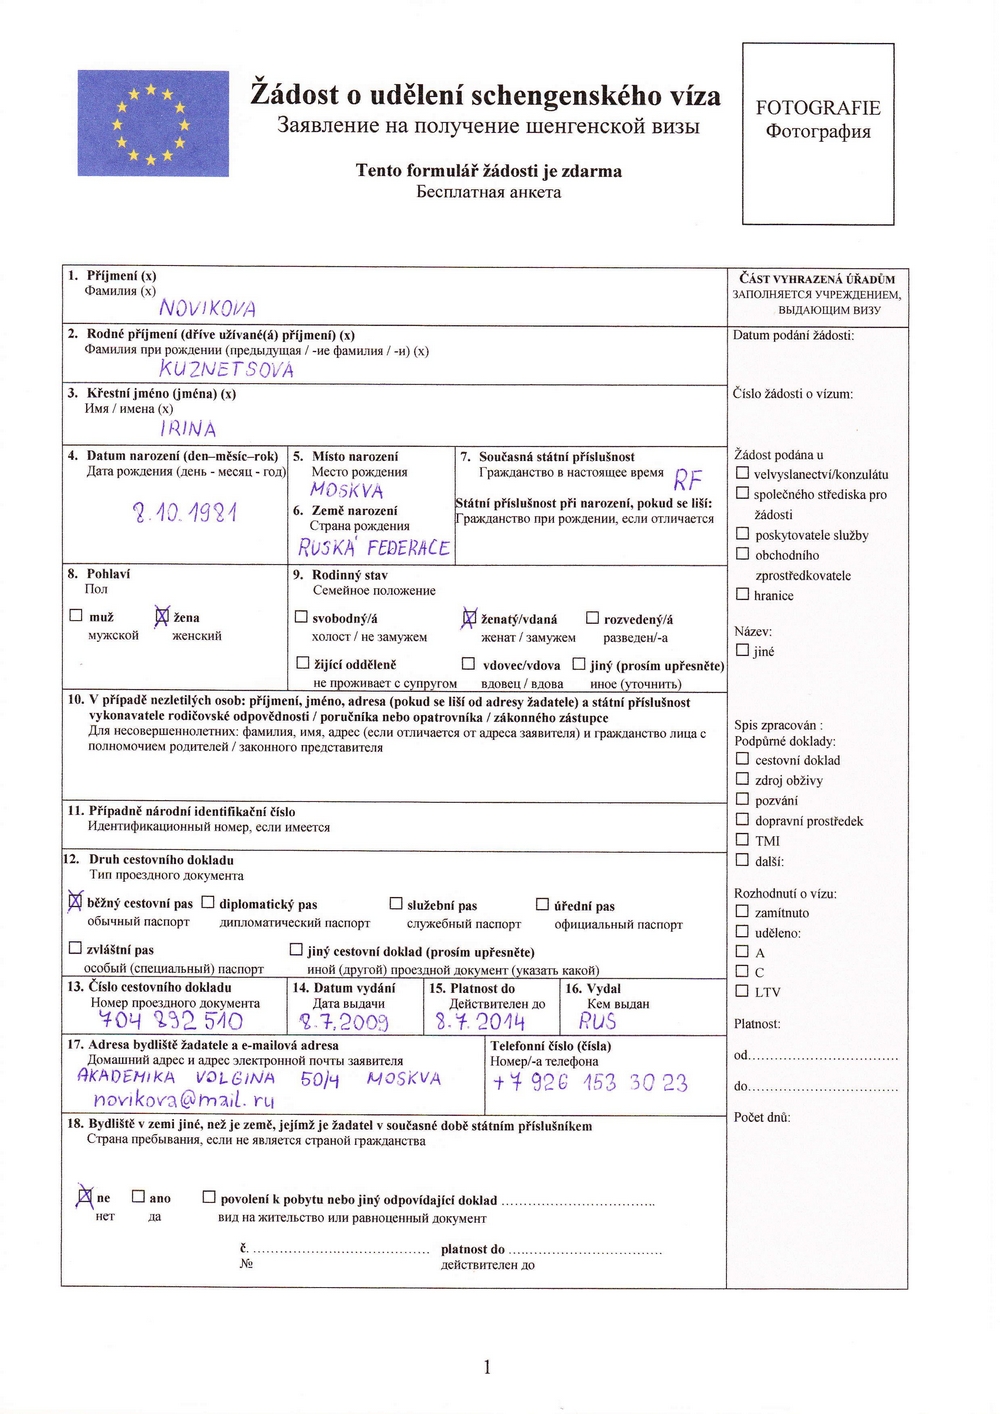 Образец заполнения анкеты на визу в Чехию, страница 1